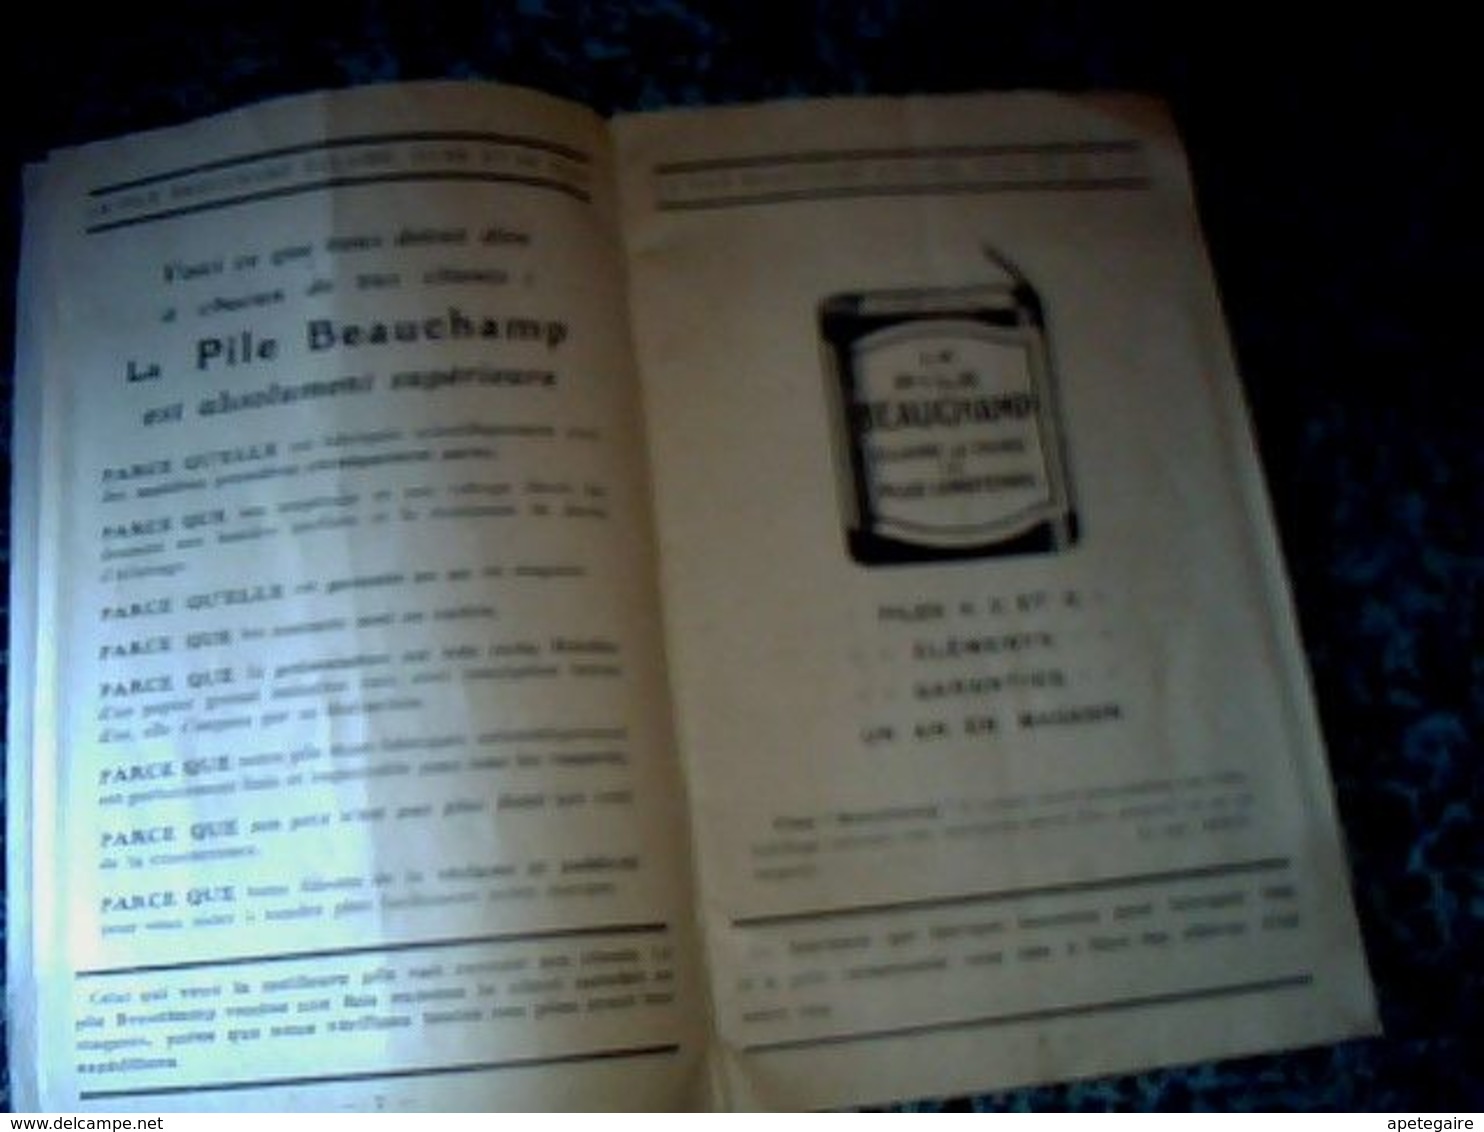 vieux papier publicité catalogue pile Beauchamp  manufacture " Beauchampile" paris rue du temple annee ? 23 pages